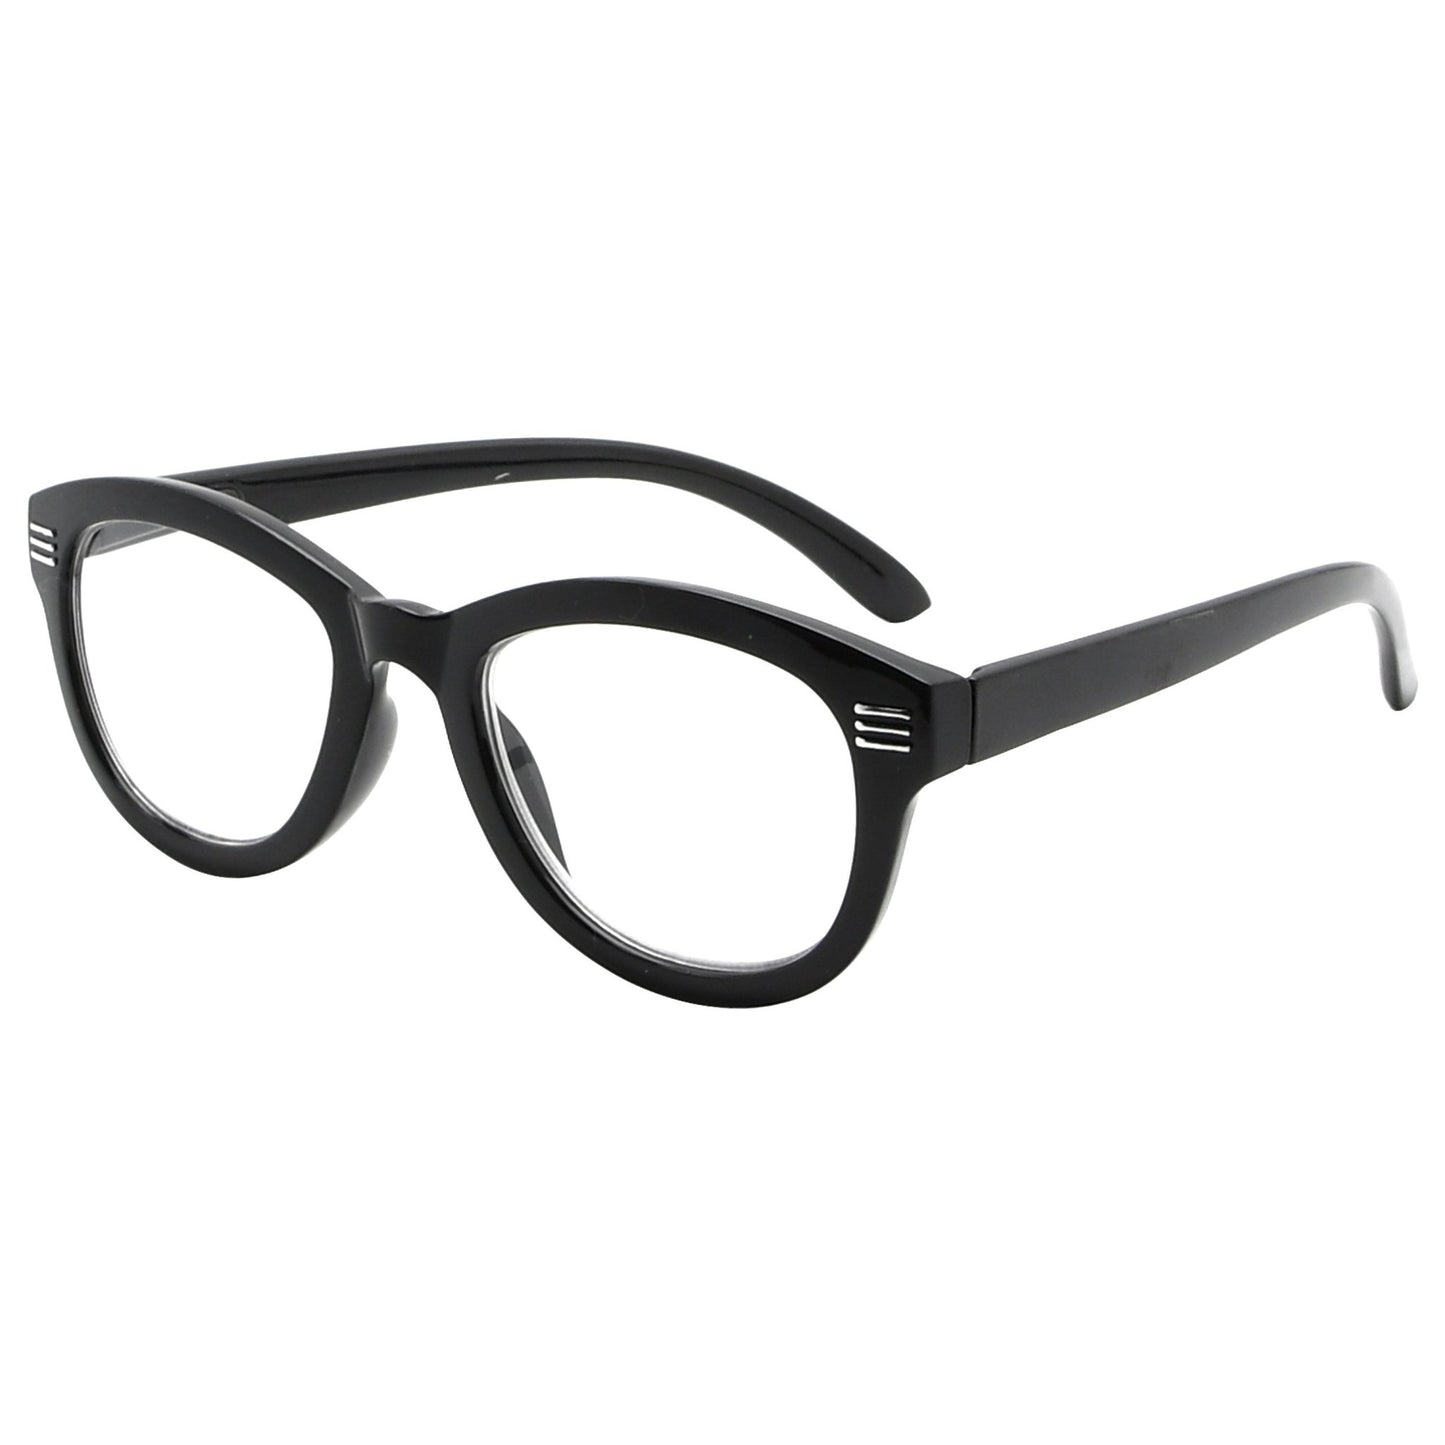 Cat-eye Reading Glasses Black R2107